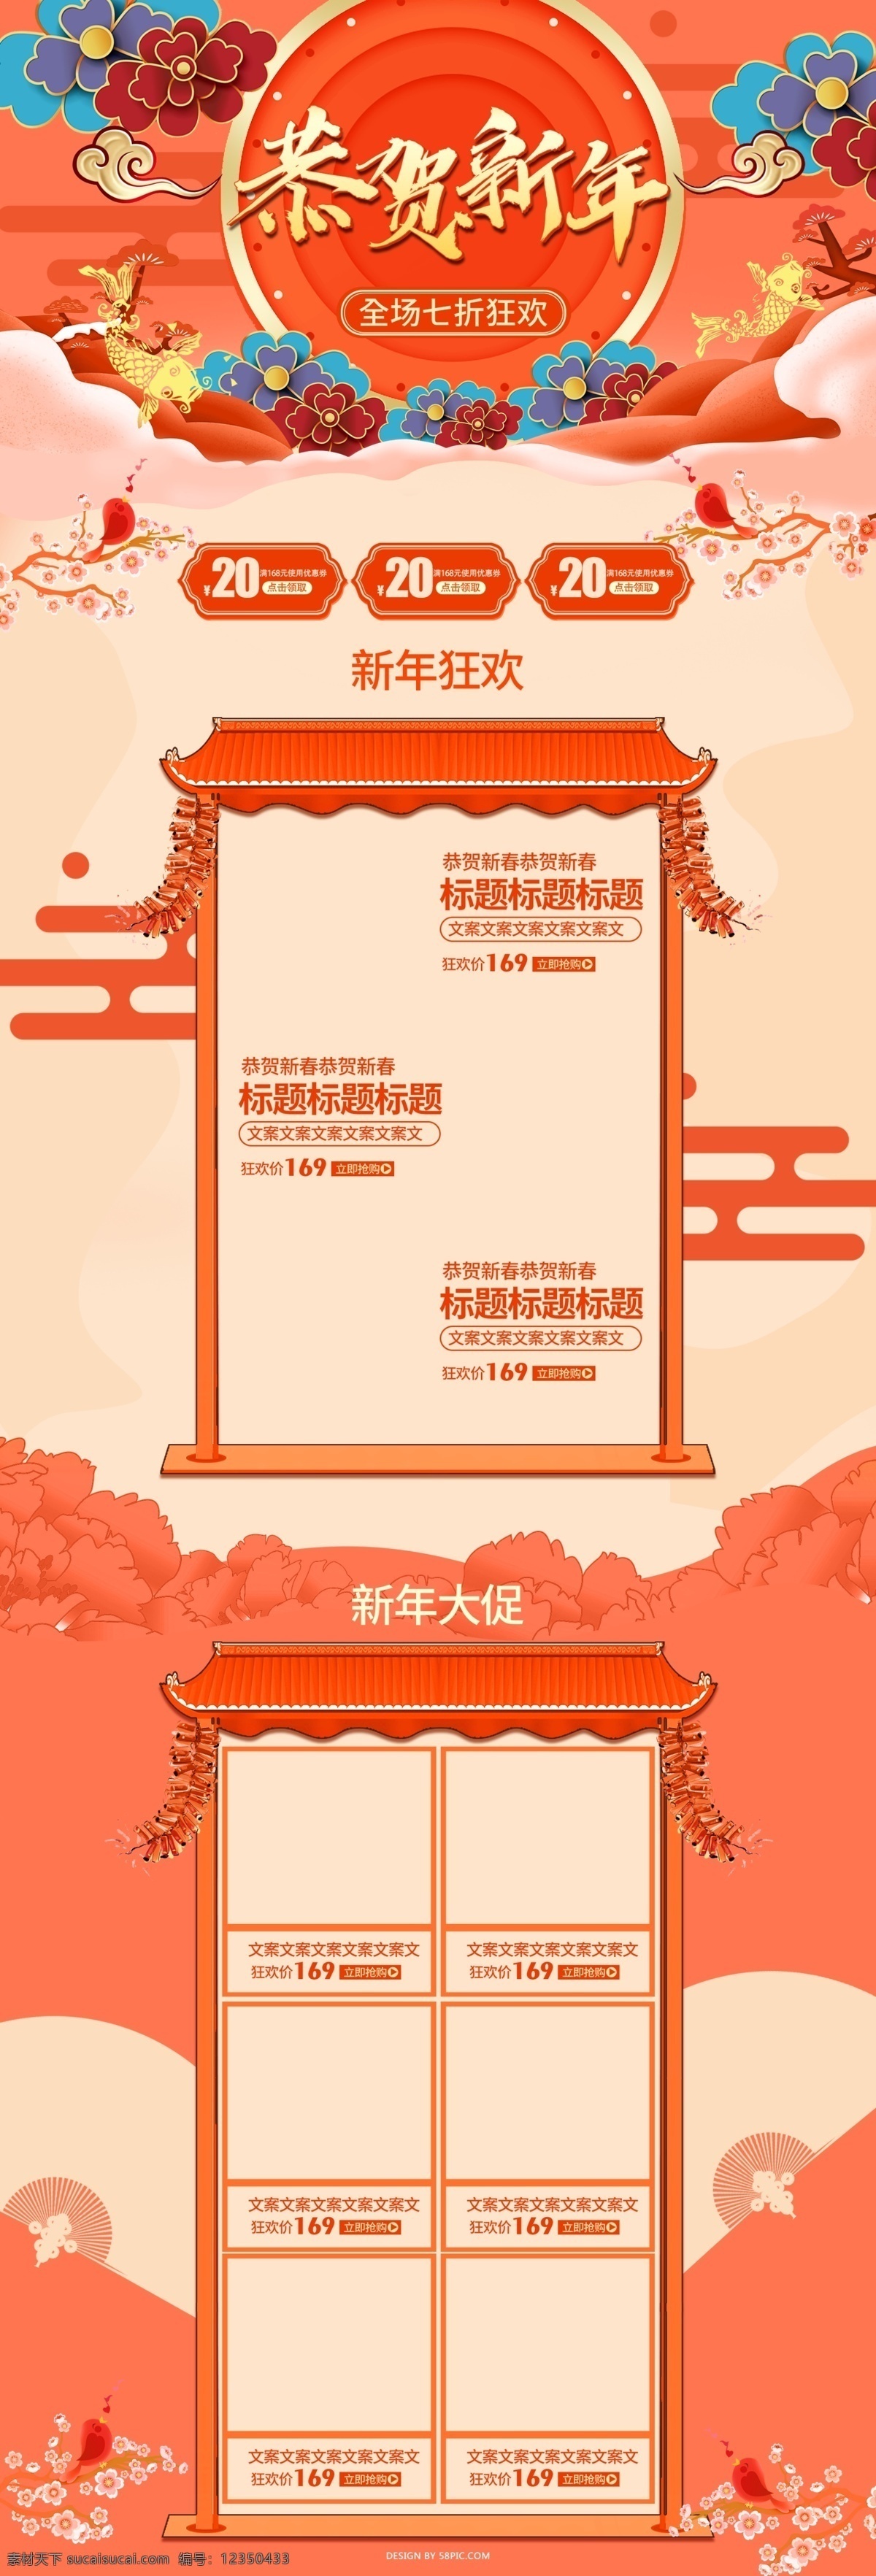 2019 新年 首页 中国 风 喜庆 风格 春节 过年 红色 化妆品 美妆 洗护